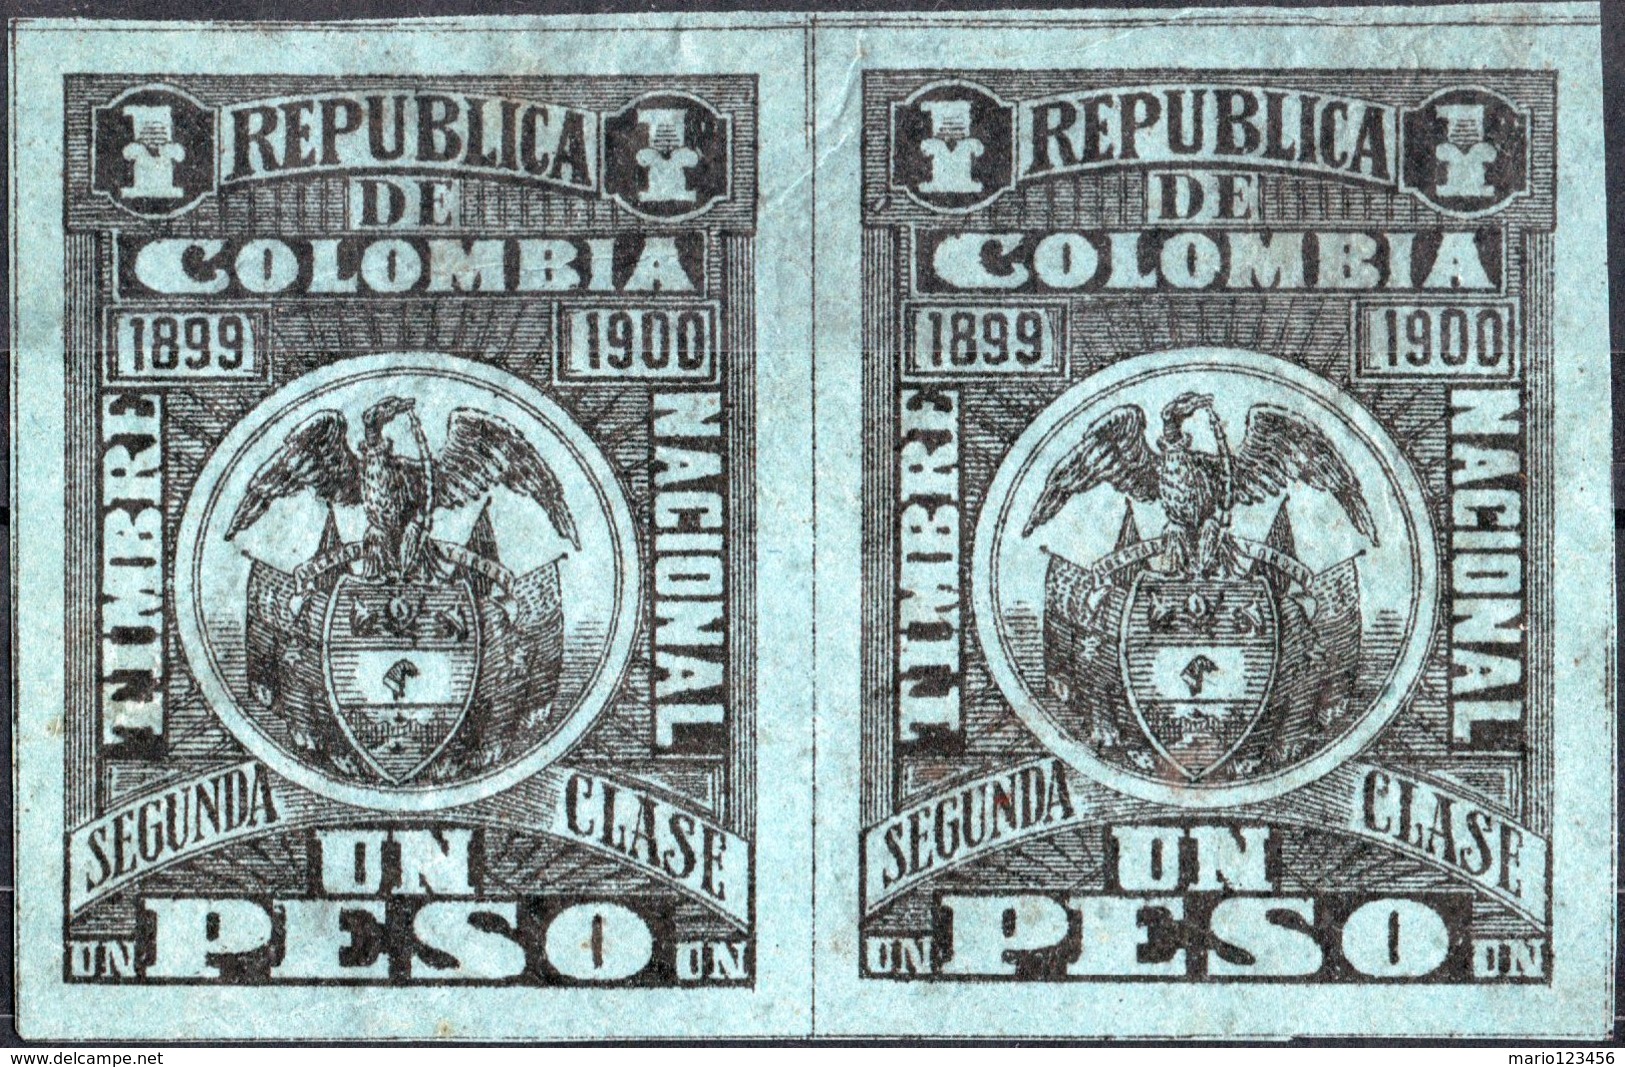 COLOMBIA, STEMMI, COAT OF ARMS, SOPRATTASSA, REVENUE FISCAL, 1899, 1 P., NUOVO (MNH**) Col.: CO 1899-2 - Colombia